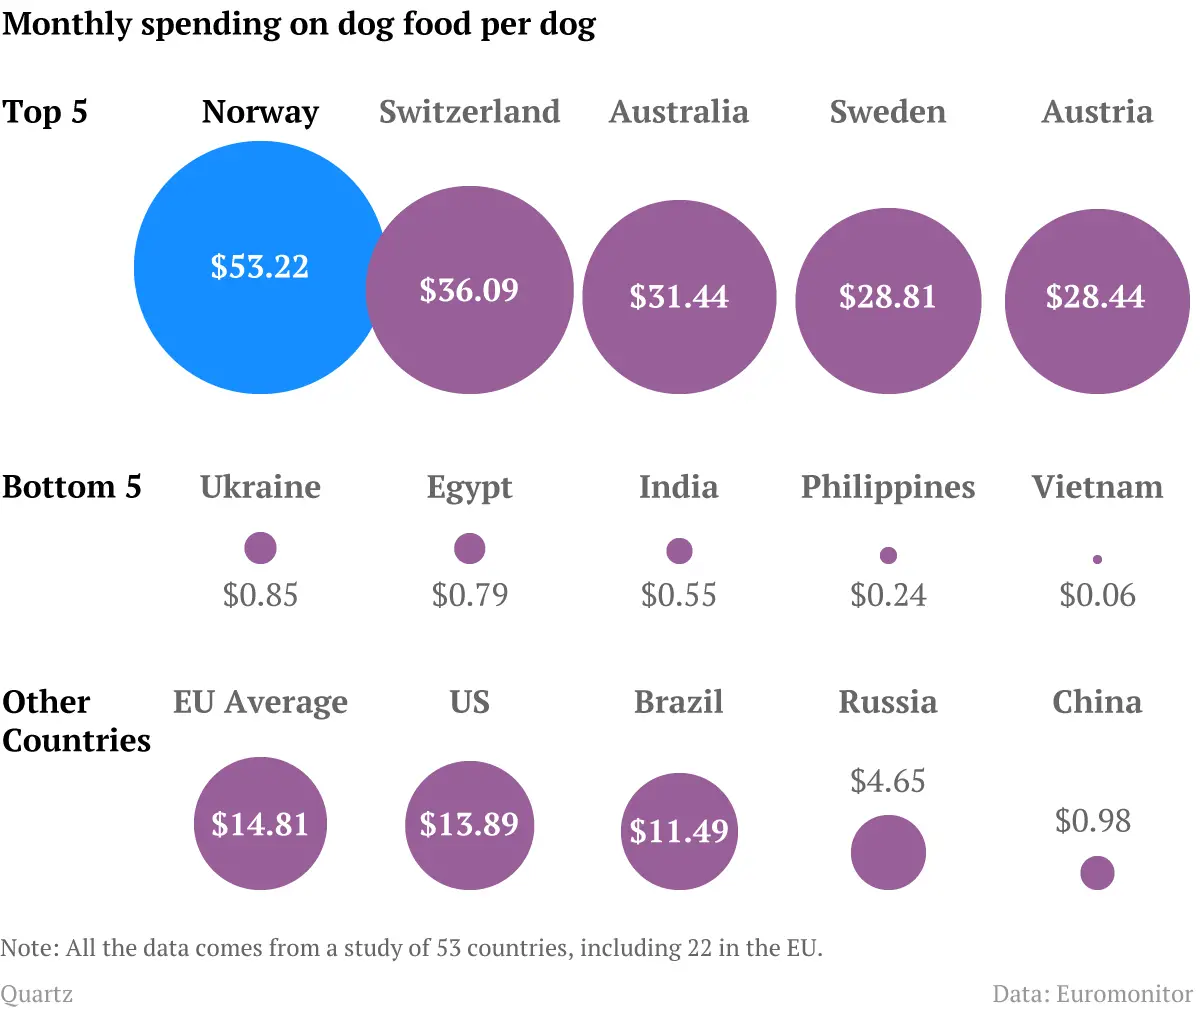 Μηνιαίο κόστος τροφής ανά σκύλο